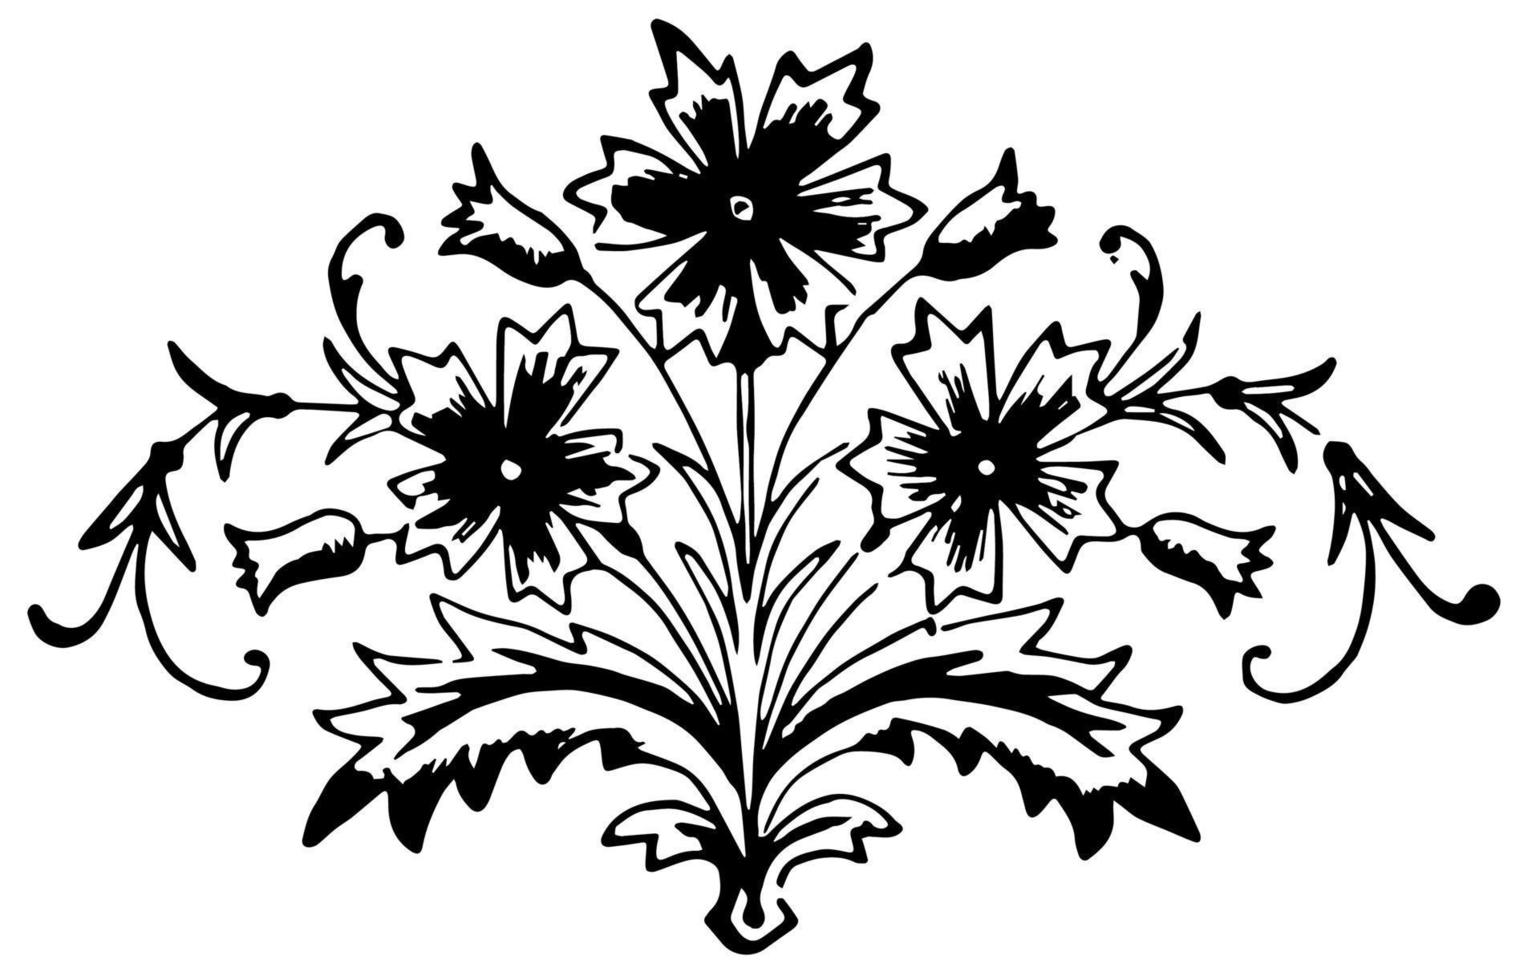 Blumenmotiv ist ein dekoratives Element, Vintage-Gravur. vektor